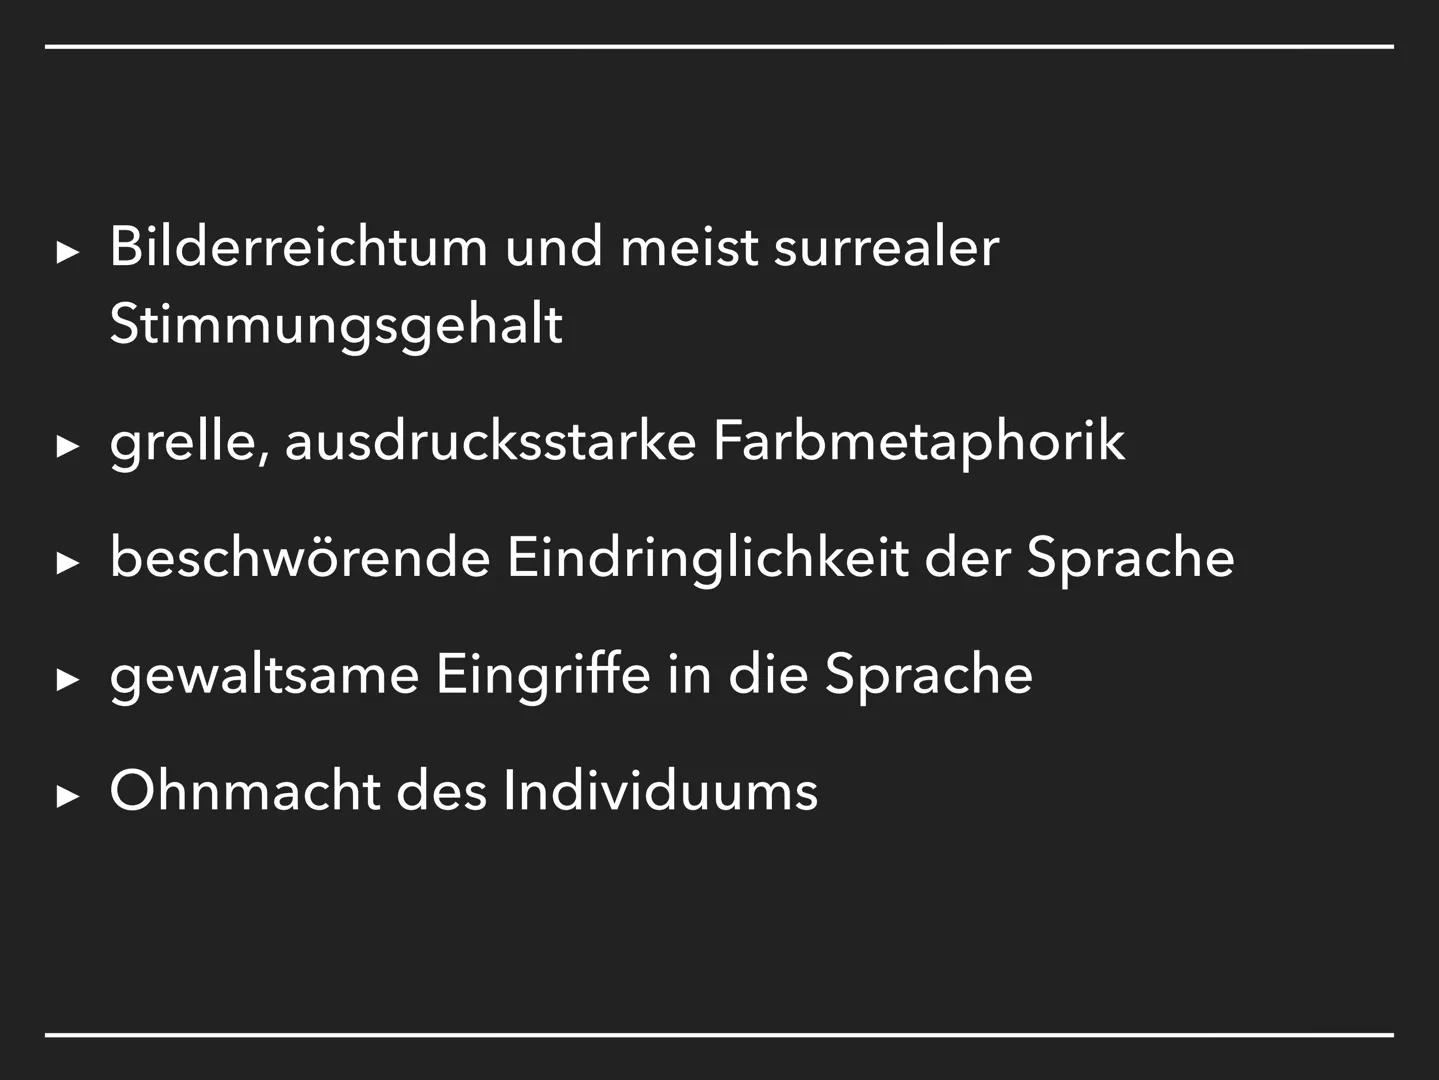 DER EXPRESSIONISMUS
1905 - 1925 DIE KUNST [DES EXPRESSIONISMUS]
GIBT NICHT DAS SICHTBARE
WIEDER, SONDERN MACHT
SICHTBAR.
Paul Klee DIE GLIED